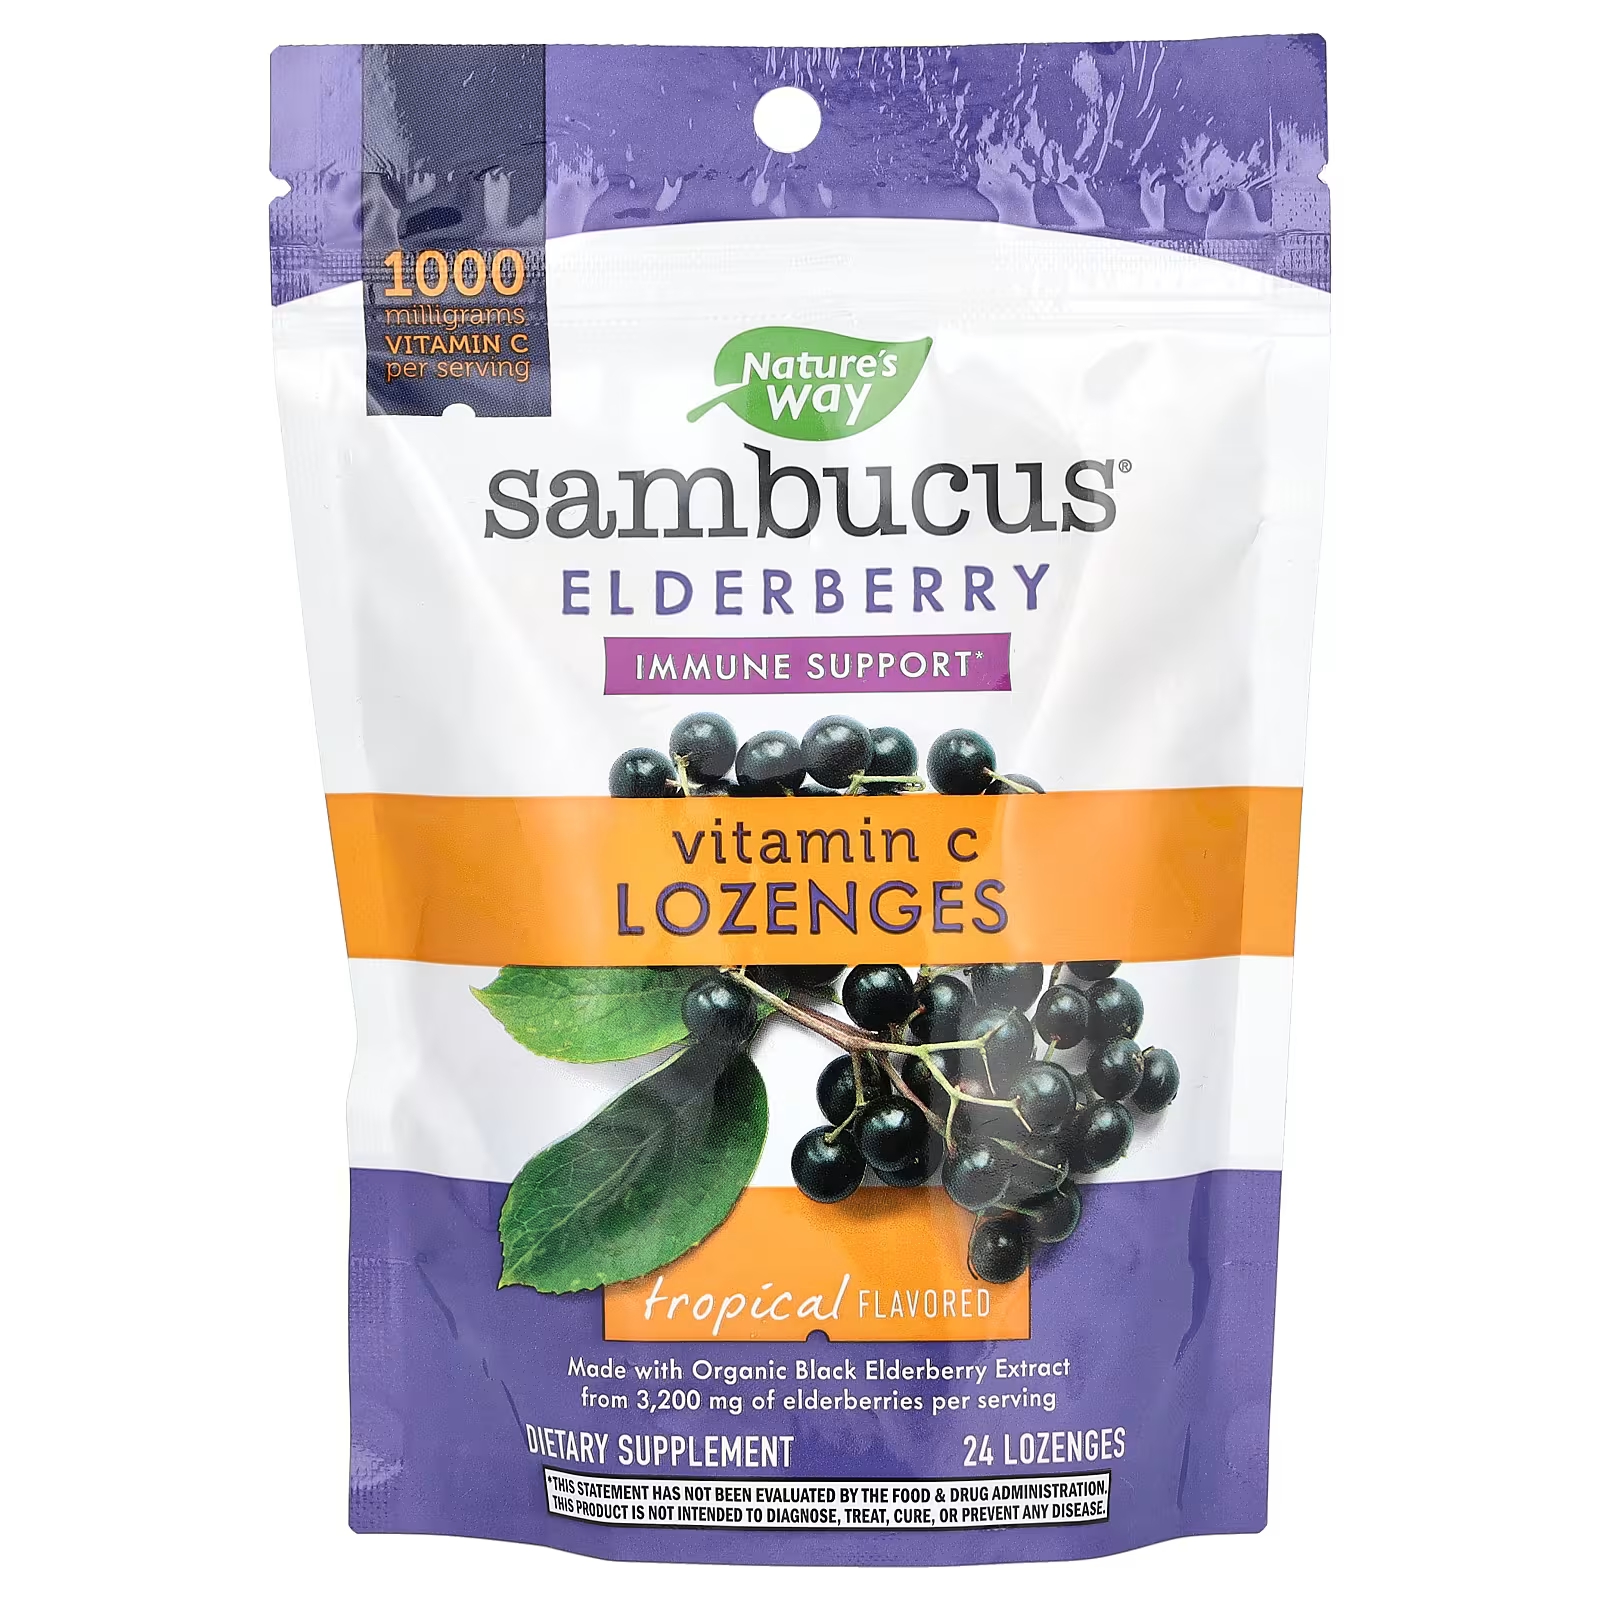 Леденцы Nature's Way Sambucus Elderberry Vitamin C, 24 штуки леденцы nature s way sambucus elderberry organic 24 штуки